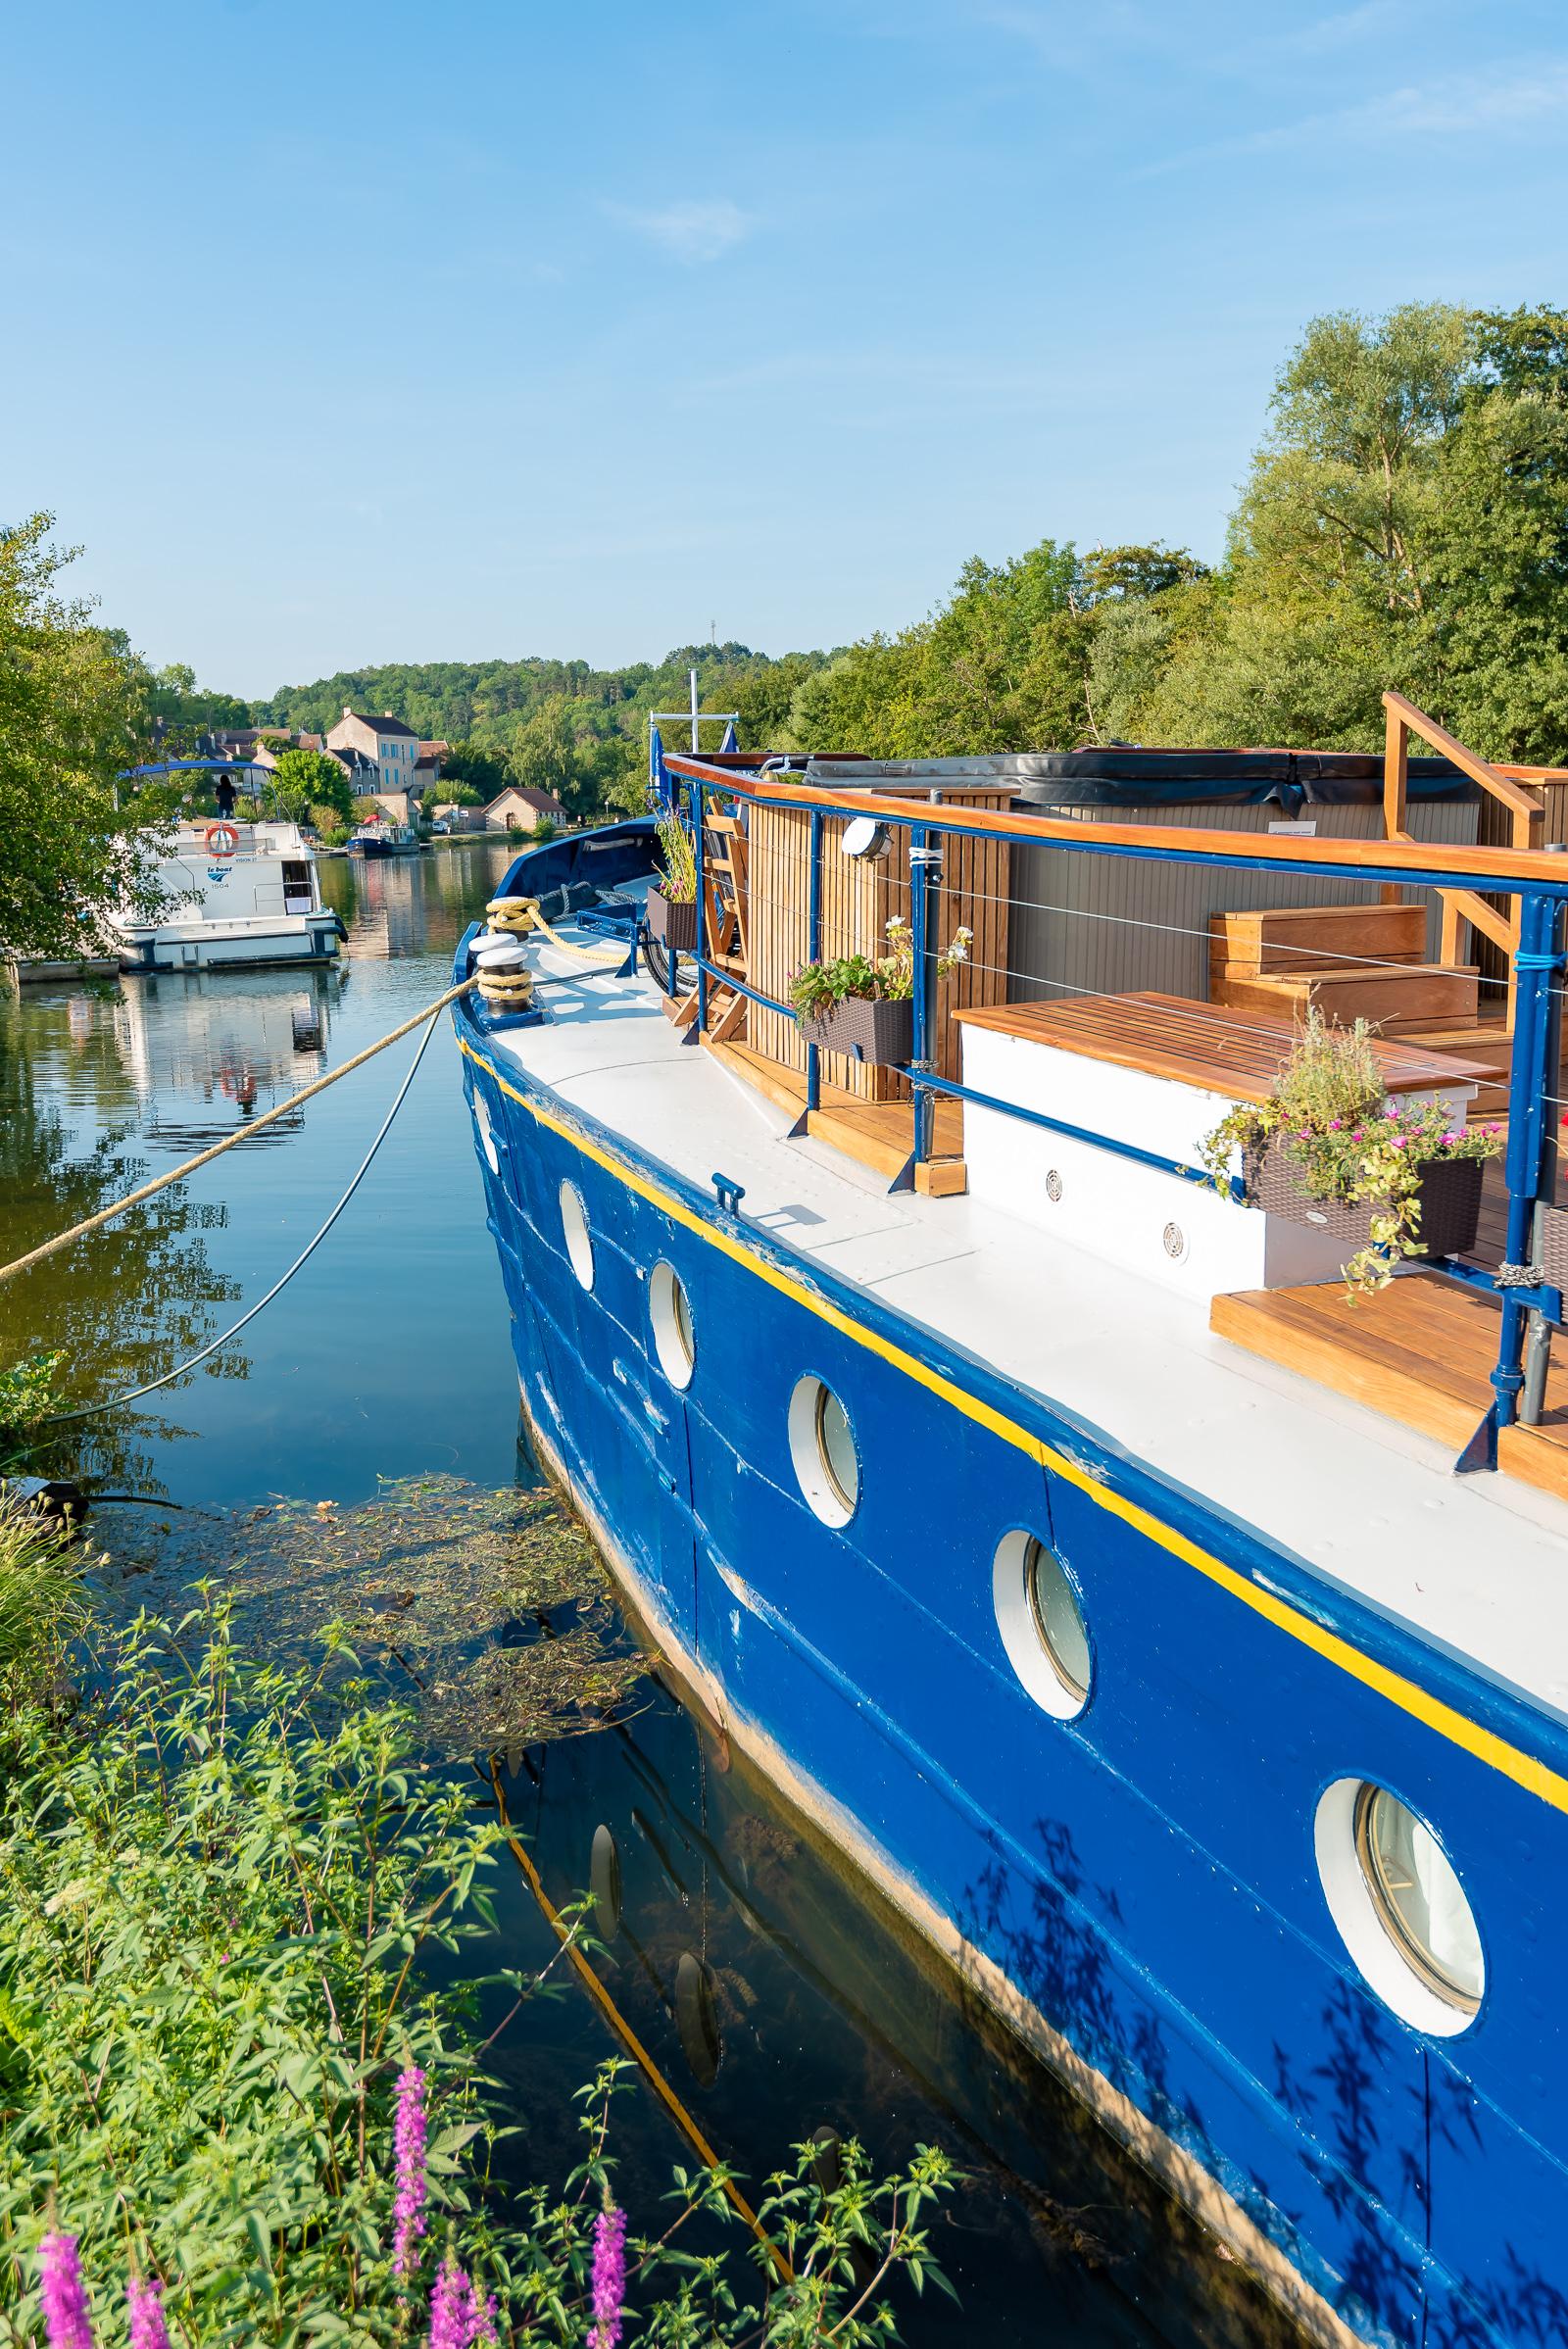 L'Art de Vivre Burgundy Canal Barge Cruise